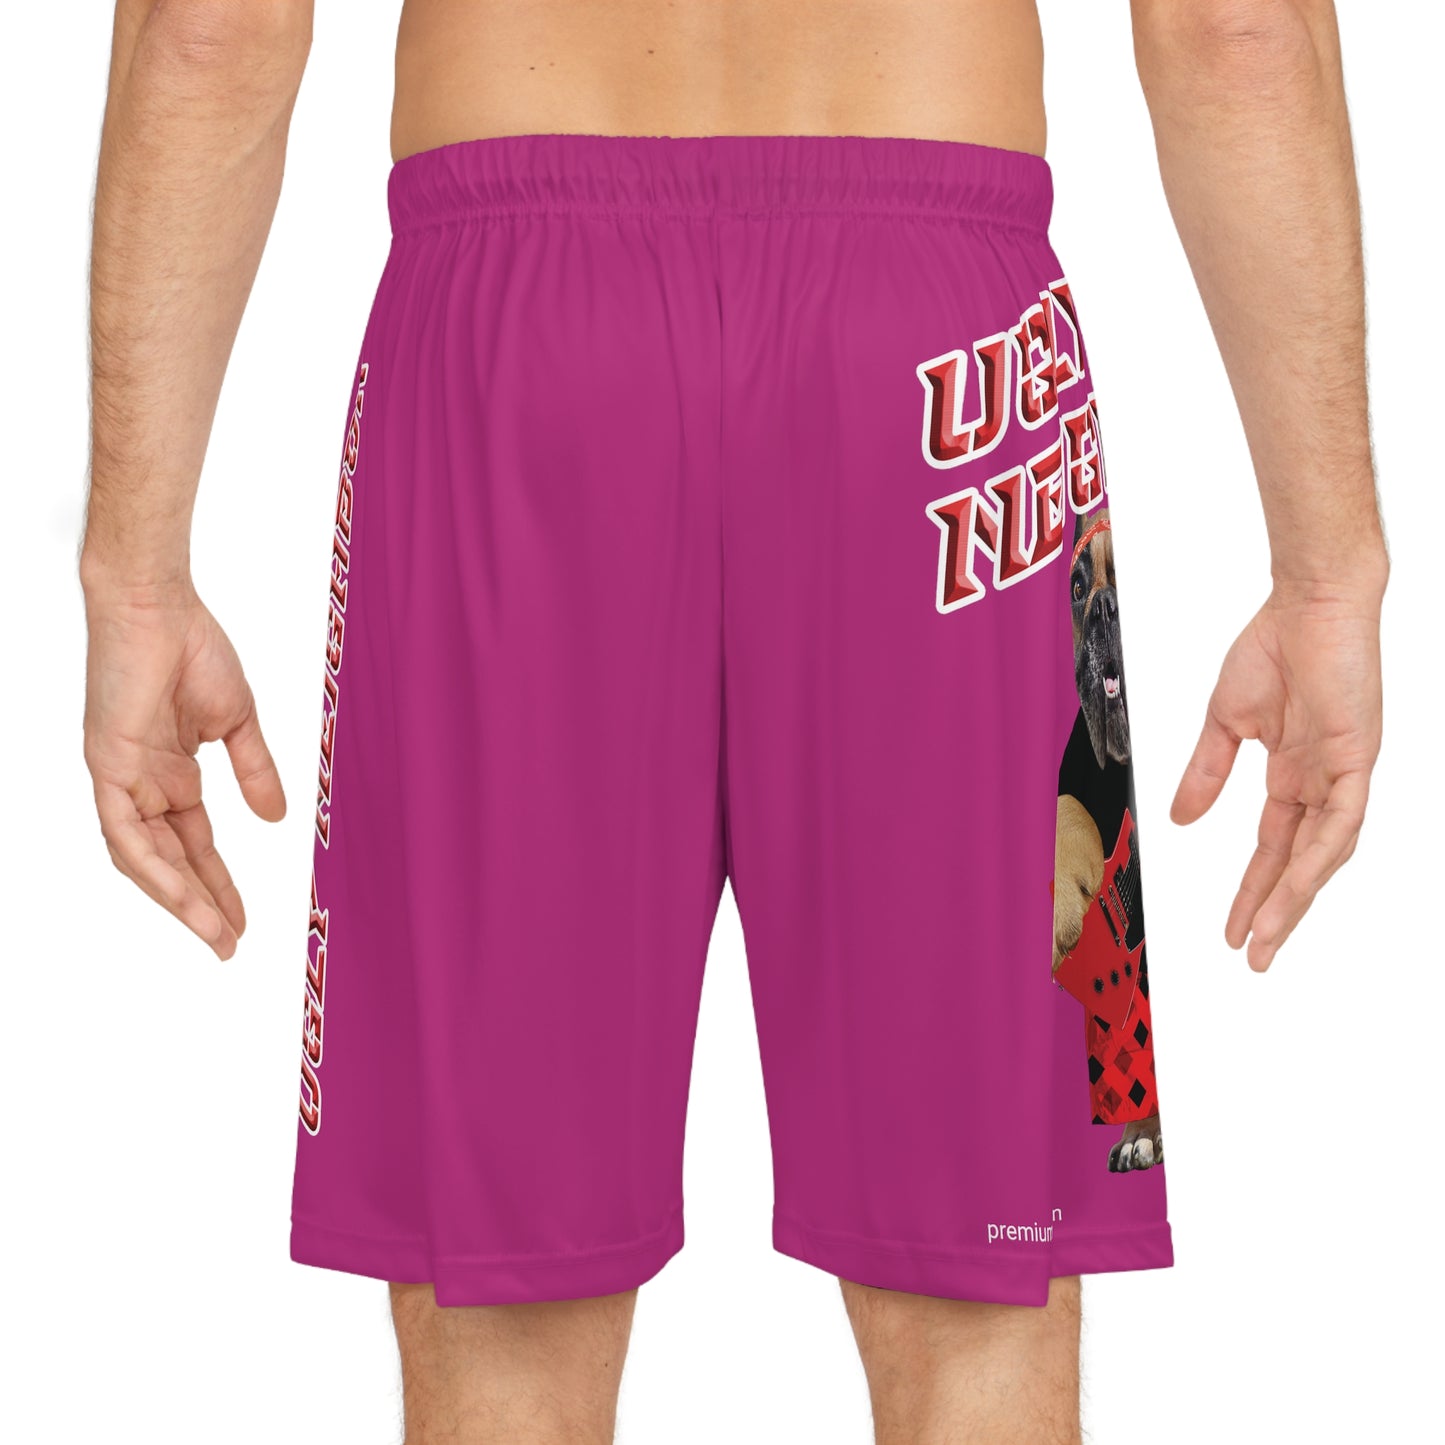 Ugly Neighbor II Basketball Shorts - Pink